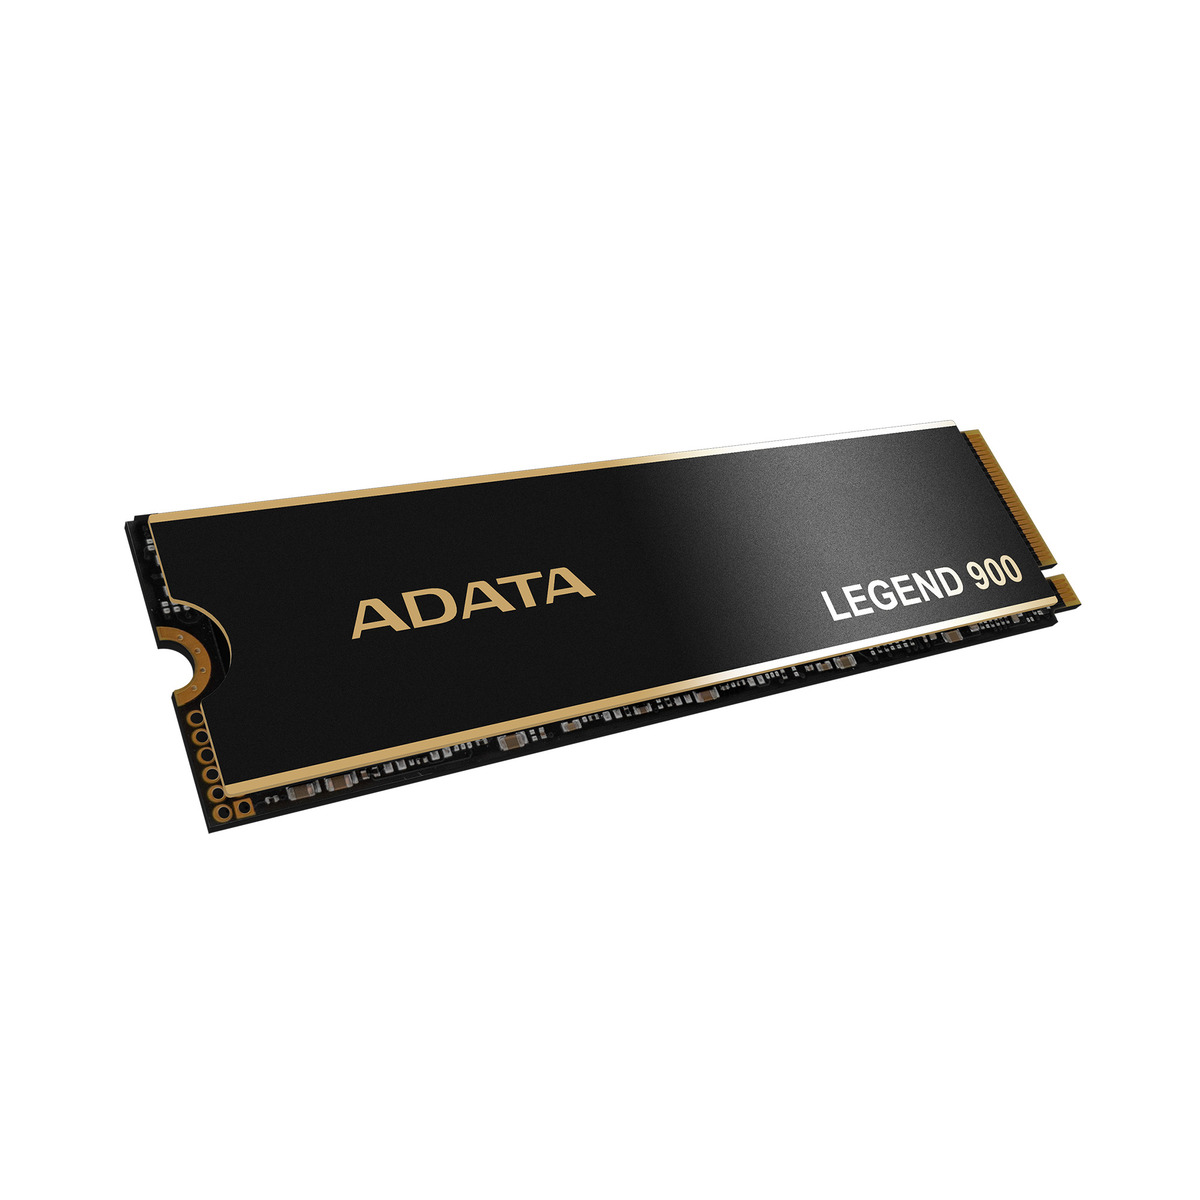 SSD ADATA LEGEND 900 512GB PCIE GEN4X4 7000/6200MB/S (SLEG-900-512GCS)